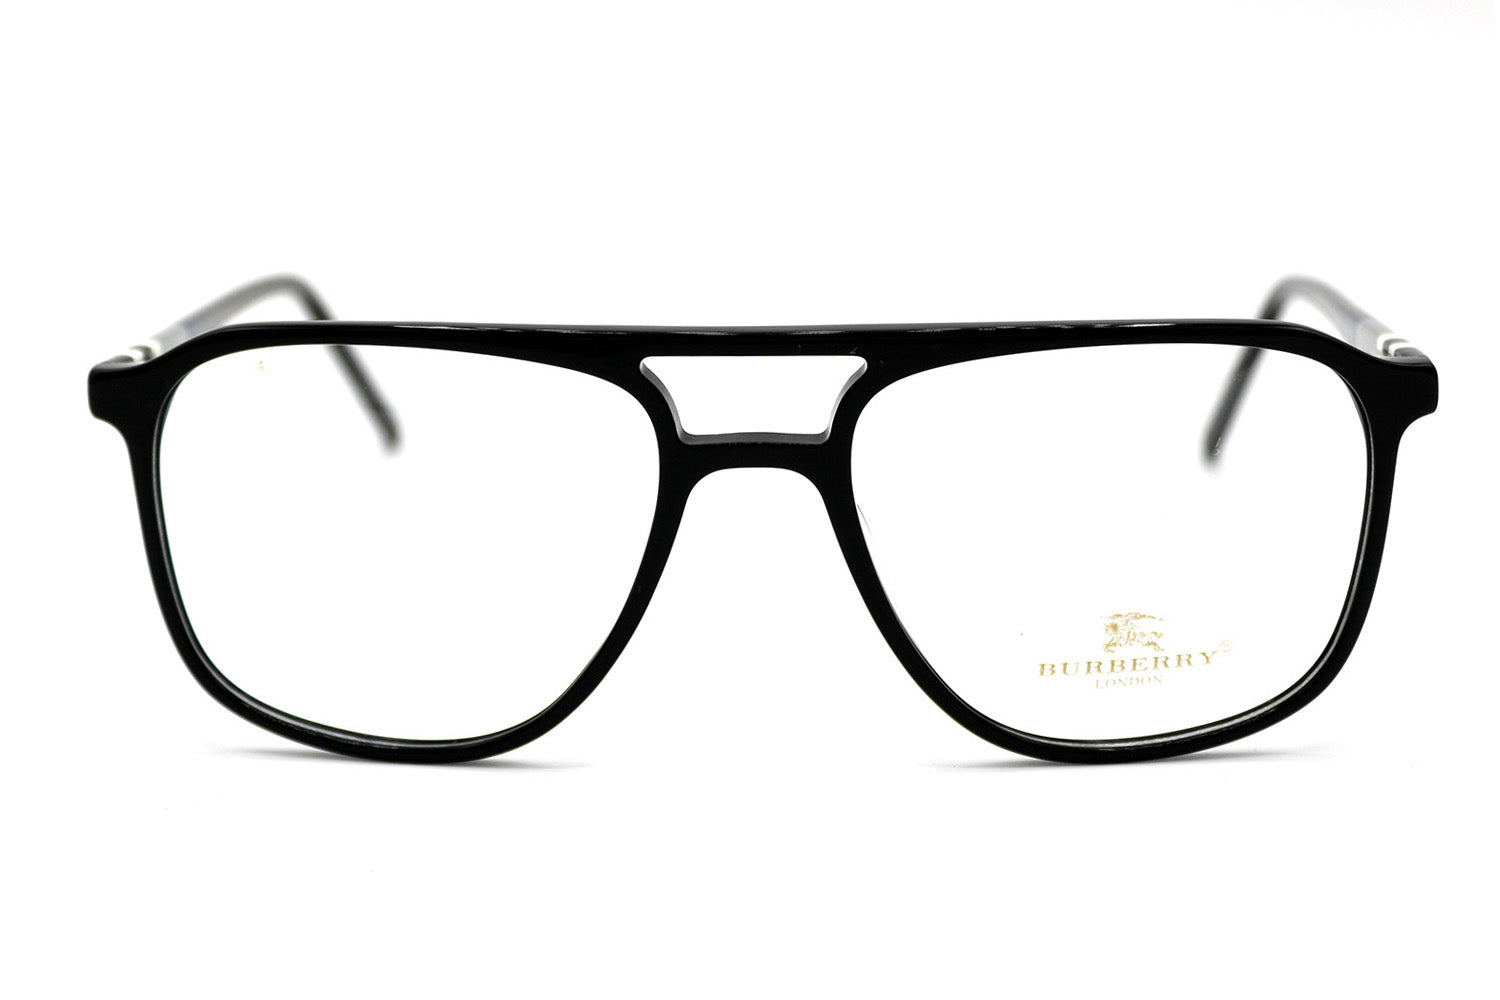 NS Luxury - 96048 - Black - Eyeglasses